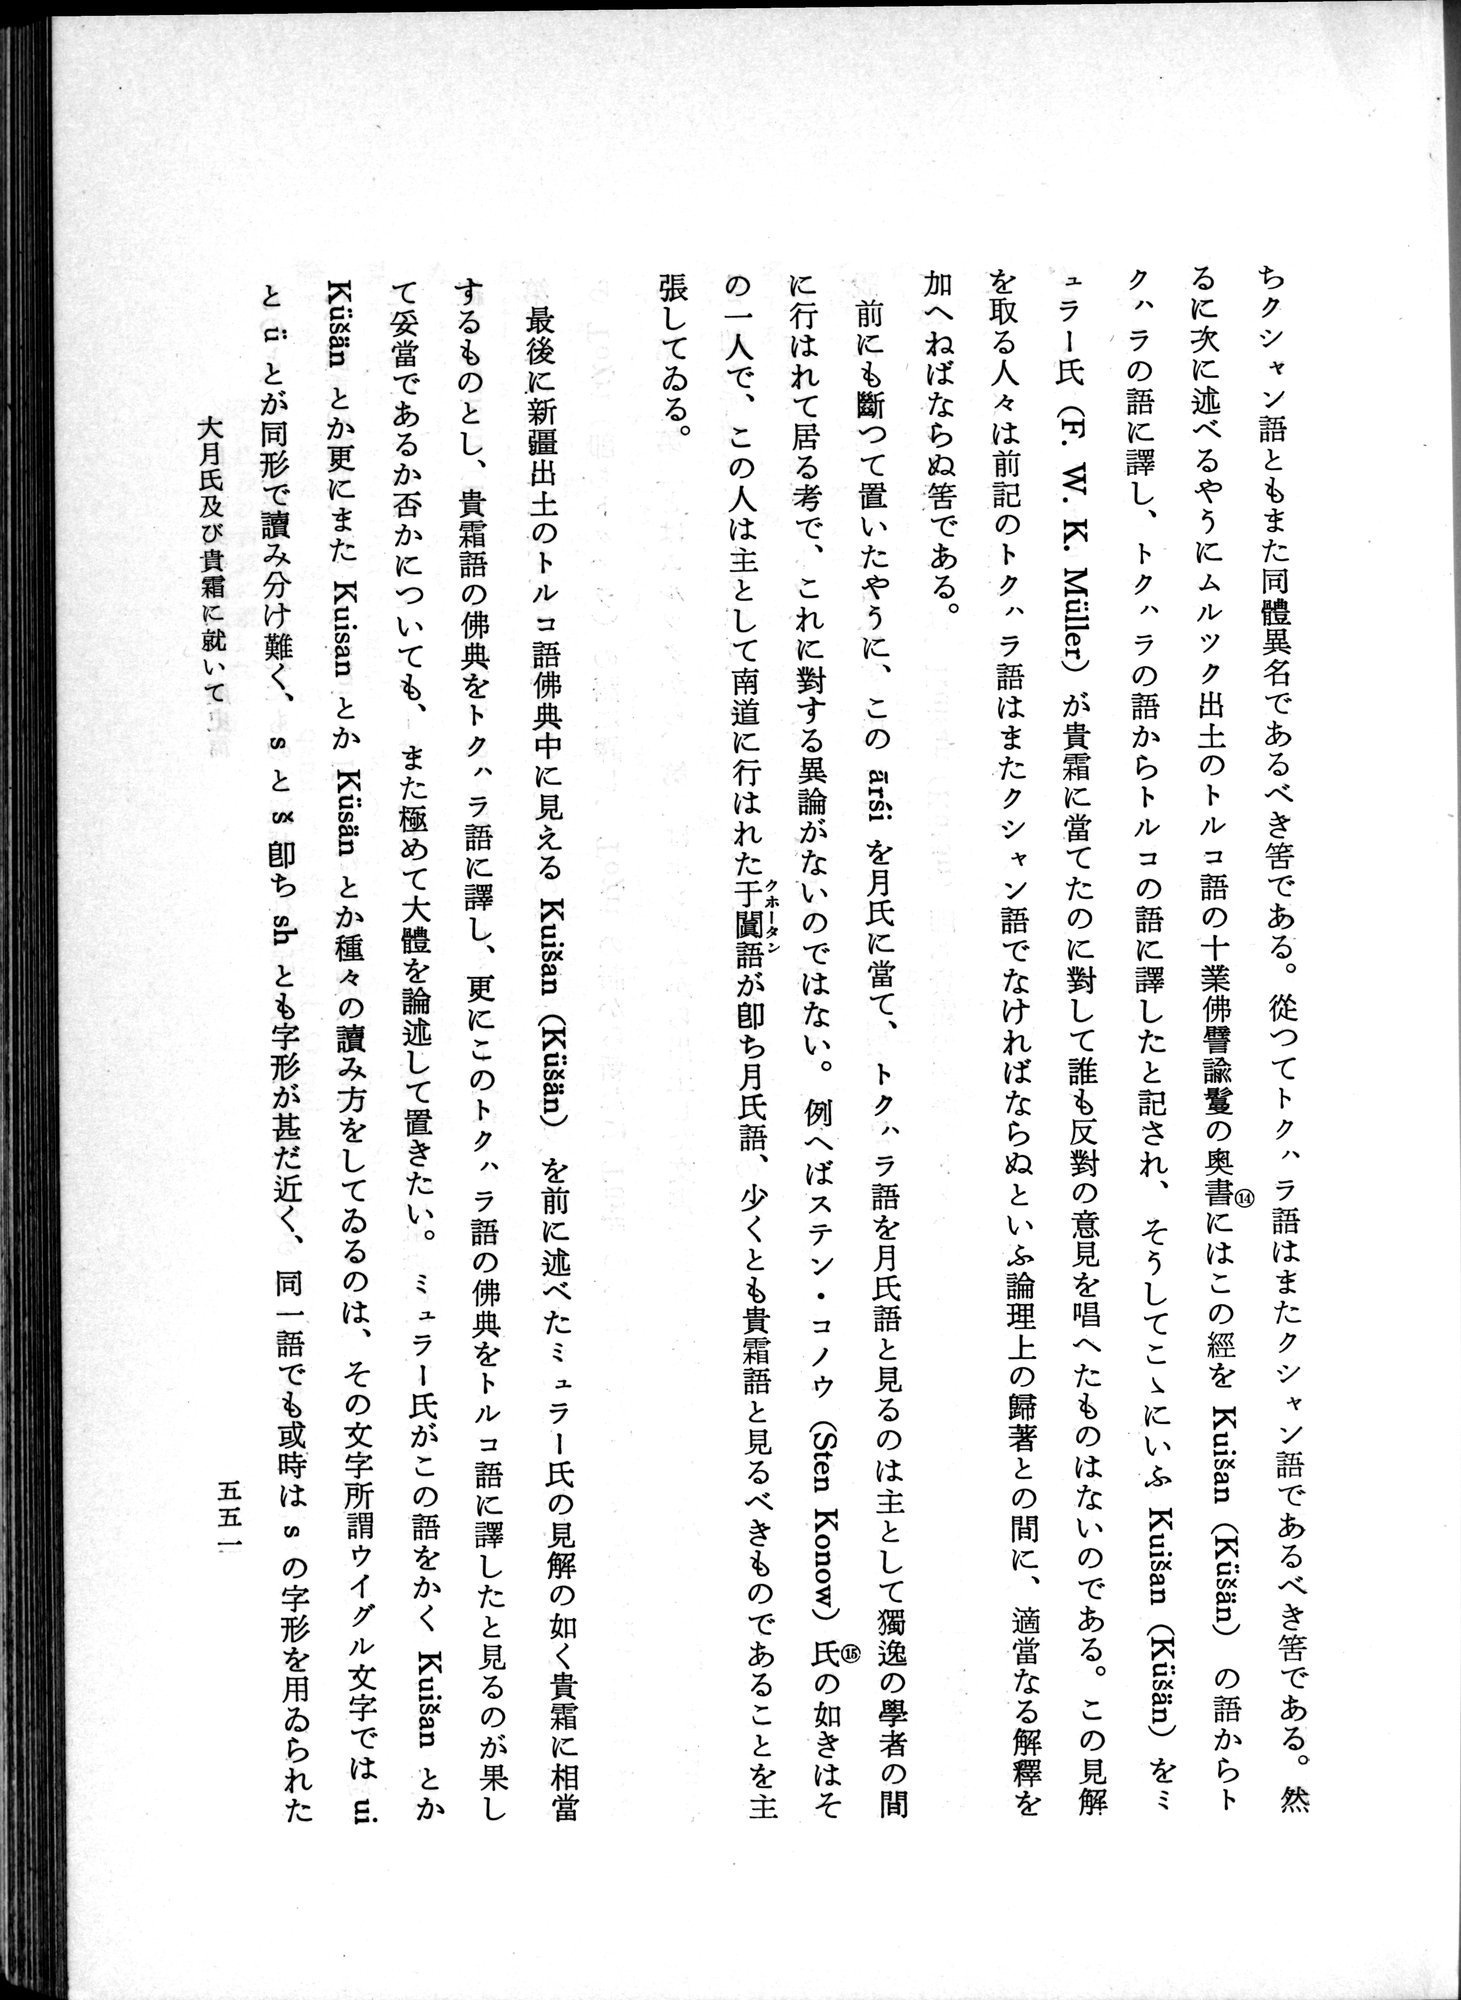 羽田博士史学論文集 : vol.1 / Page 589 (Grayscale High Resolution Image)